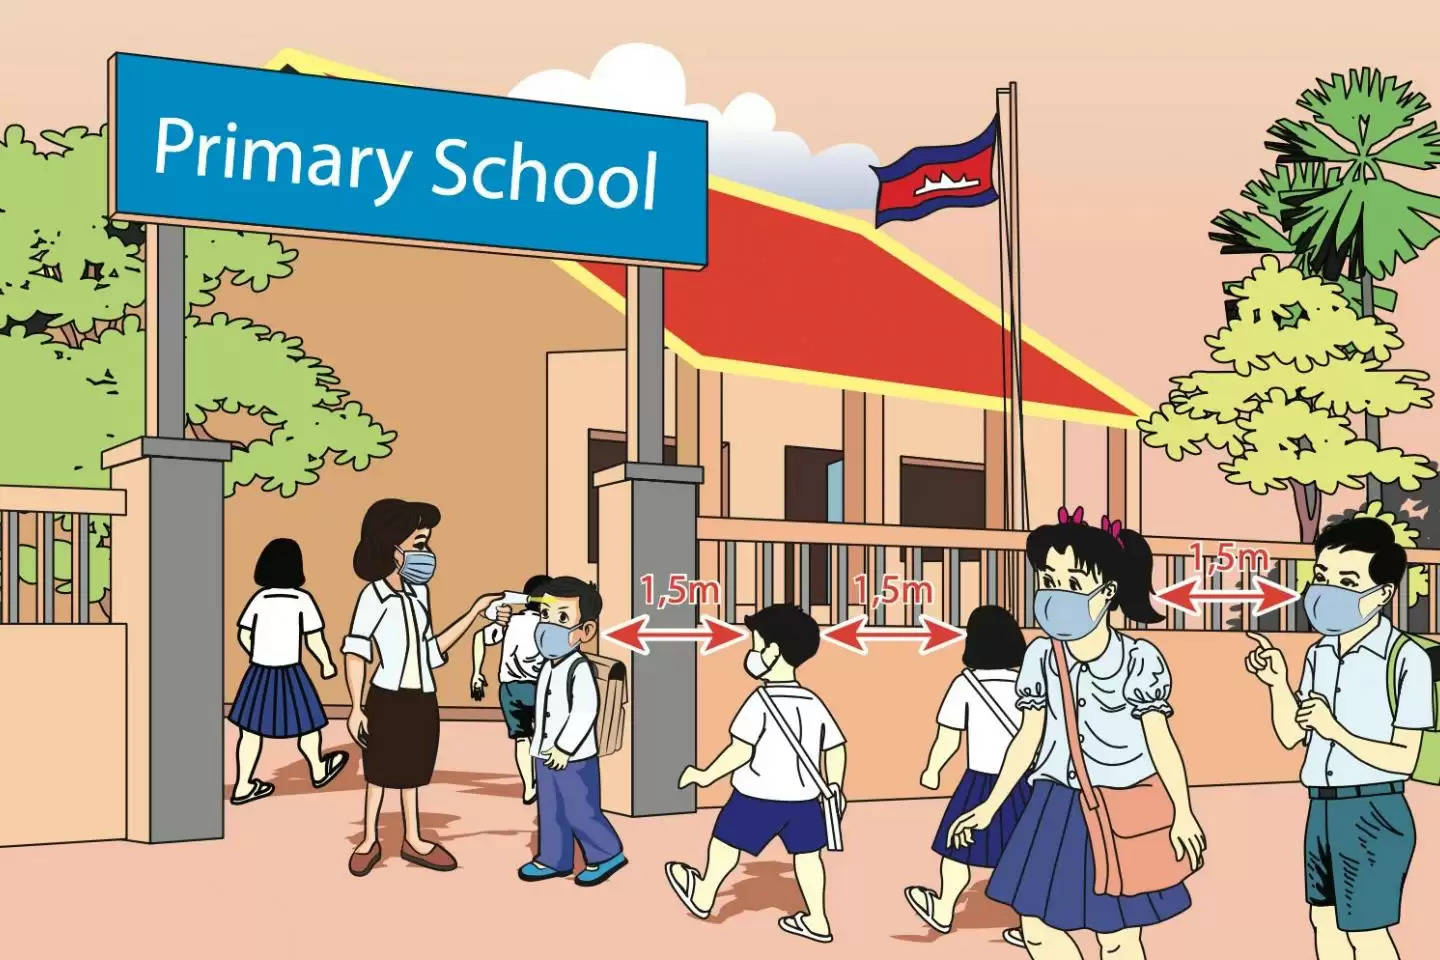 अभिभावकों के विरोध के चलते प्रदेश सरकार (Himachal Gov't) ने प्राइमरी कक्षाओं के बच्चों की 15 नवंबर से शुरू होने वाली नियमित कक्षाओं के आदेश को बदल दिया है। निजी स्कूलों (private schools) में पढ़ने वाले बच्चों के अभिभावकों के विरोध के बाद सरकार ने फैसला बदला है।